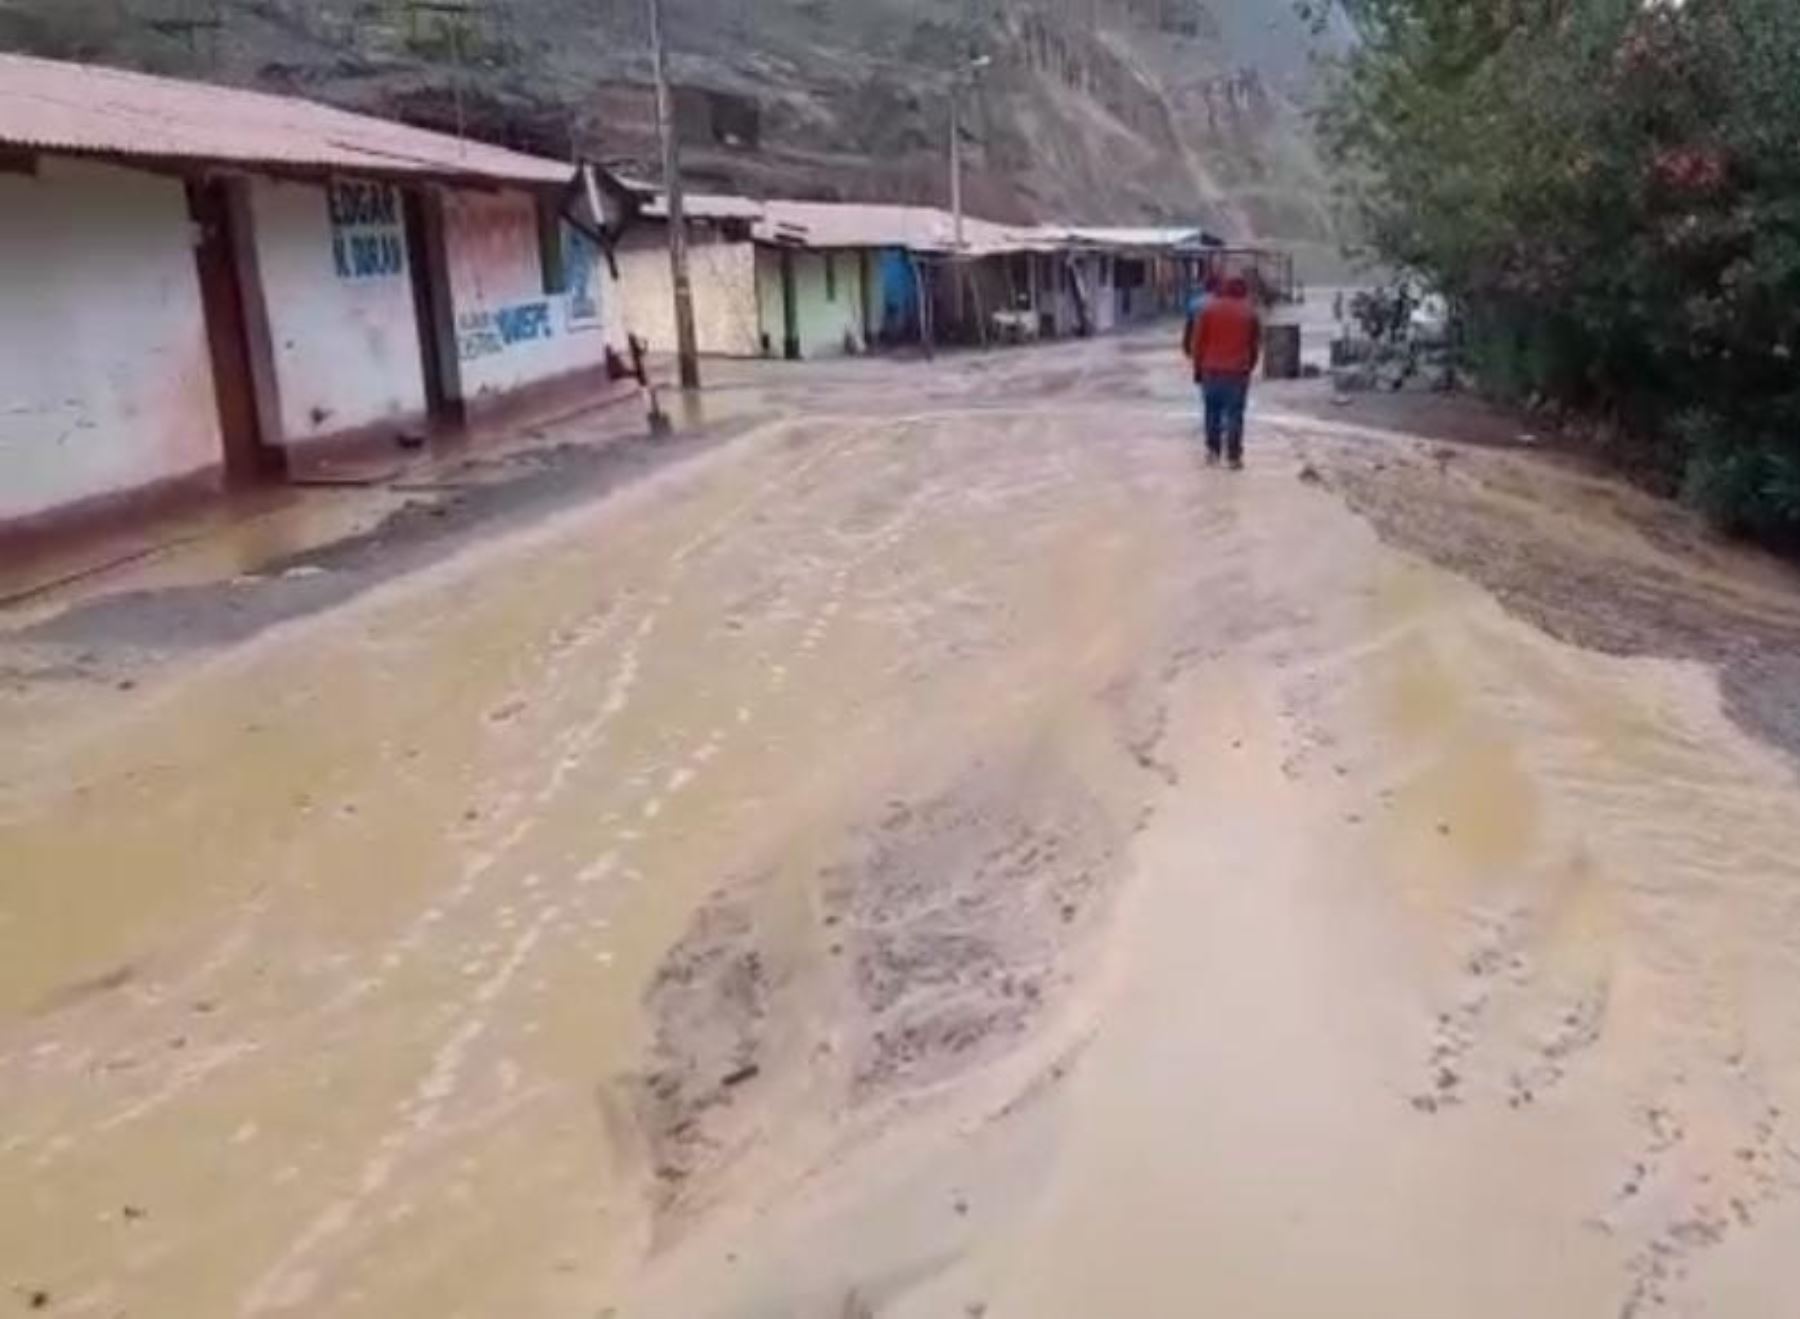 Las lluvias intensas que se registran en Huancavelica provocaron huaicos, inundaciones y deslizamientos que afectaron a diversas comunidades del distrito de Pilchaca. ANDINA/Difusión